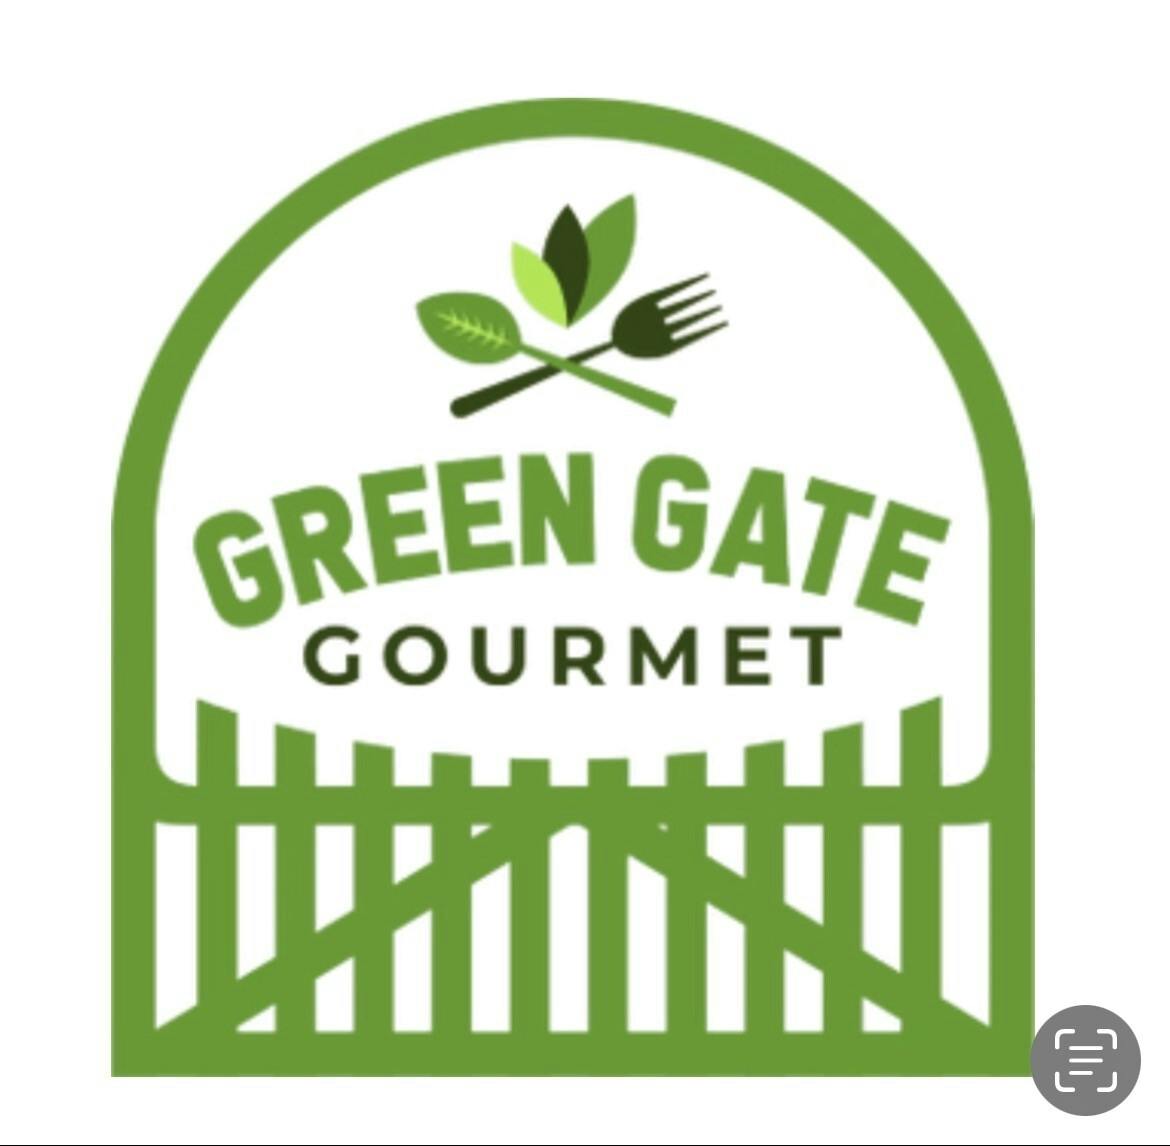 Green Gate Gourmet